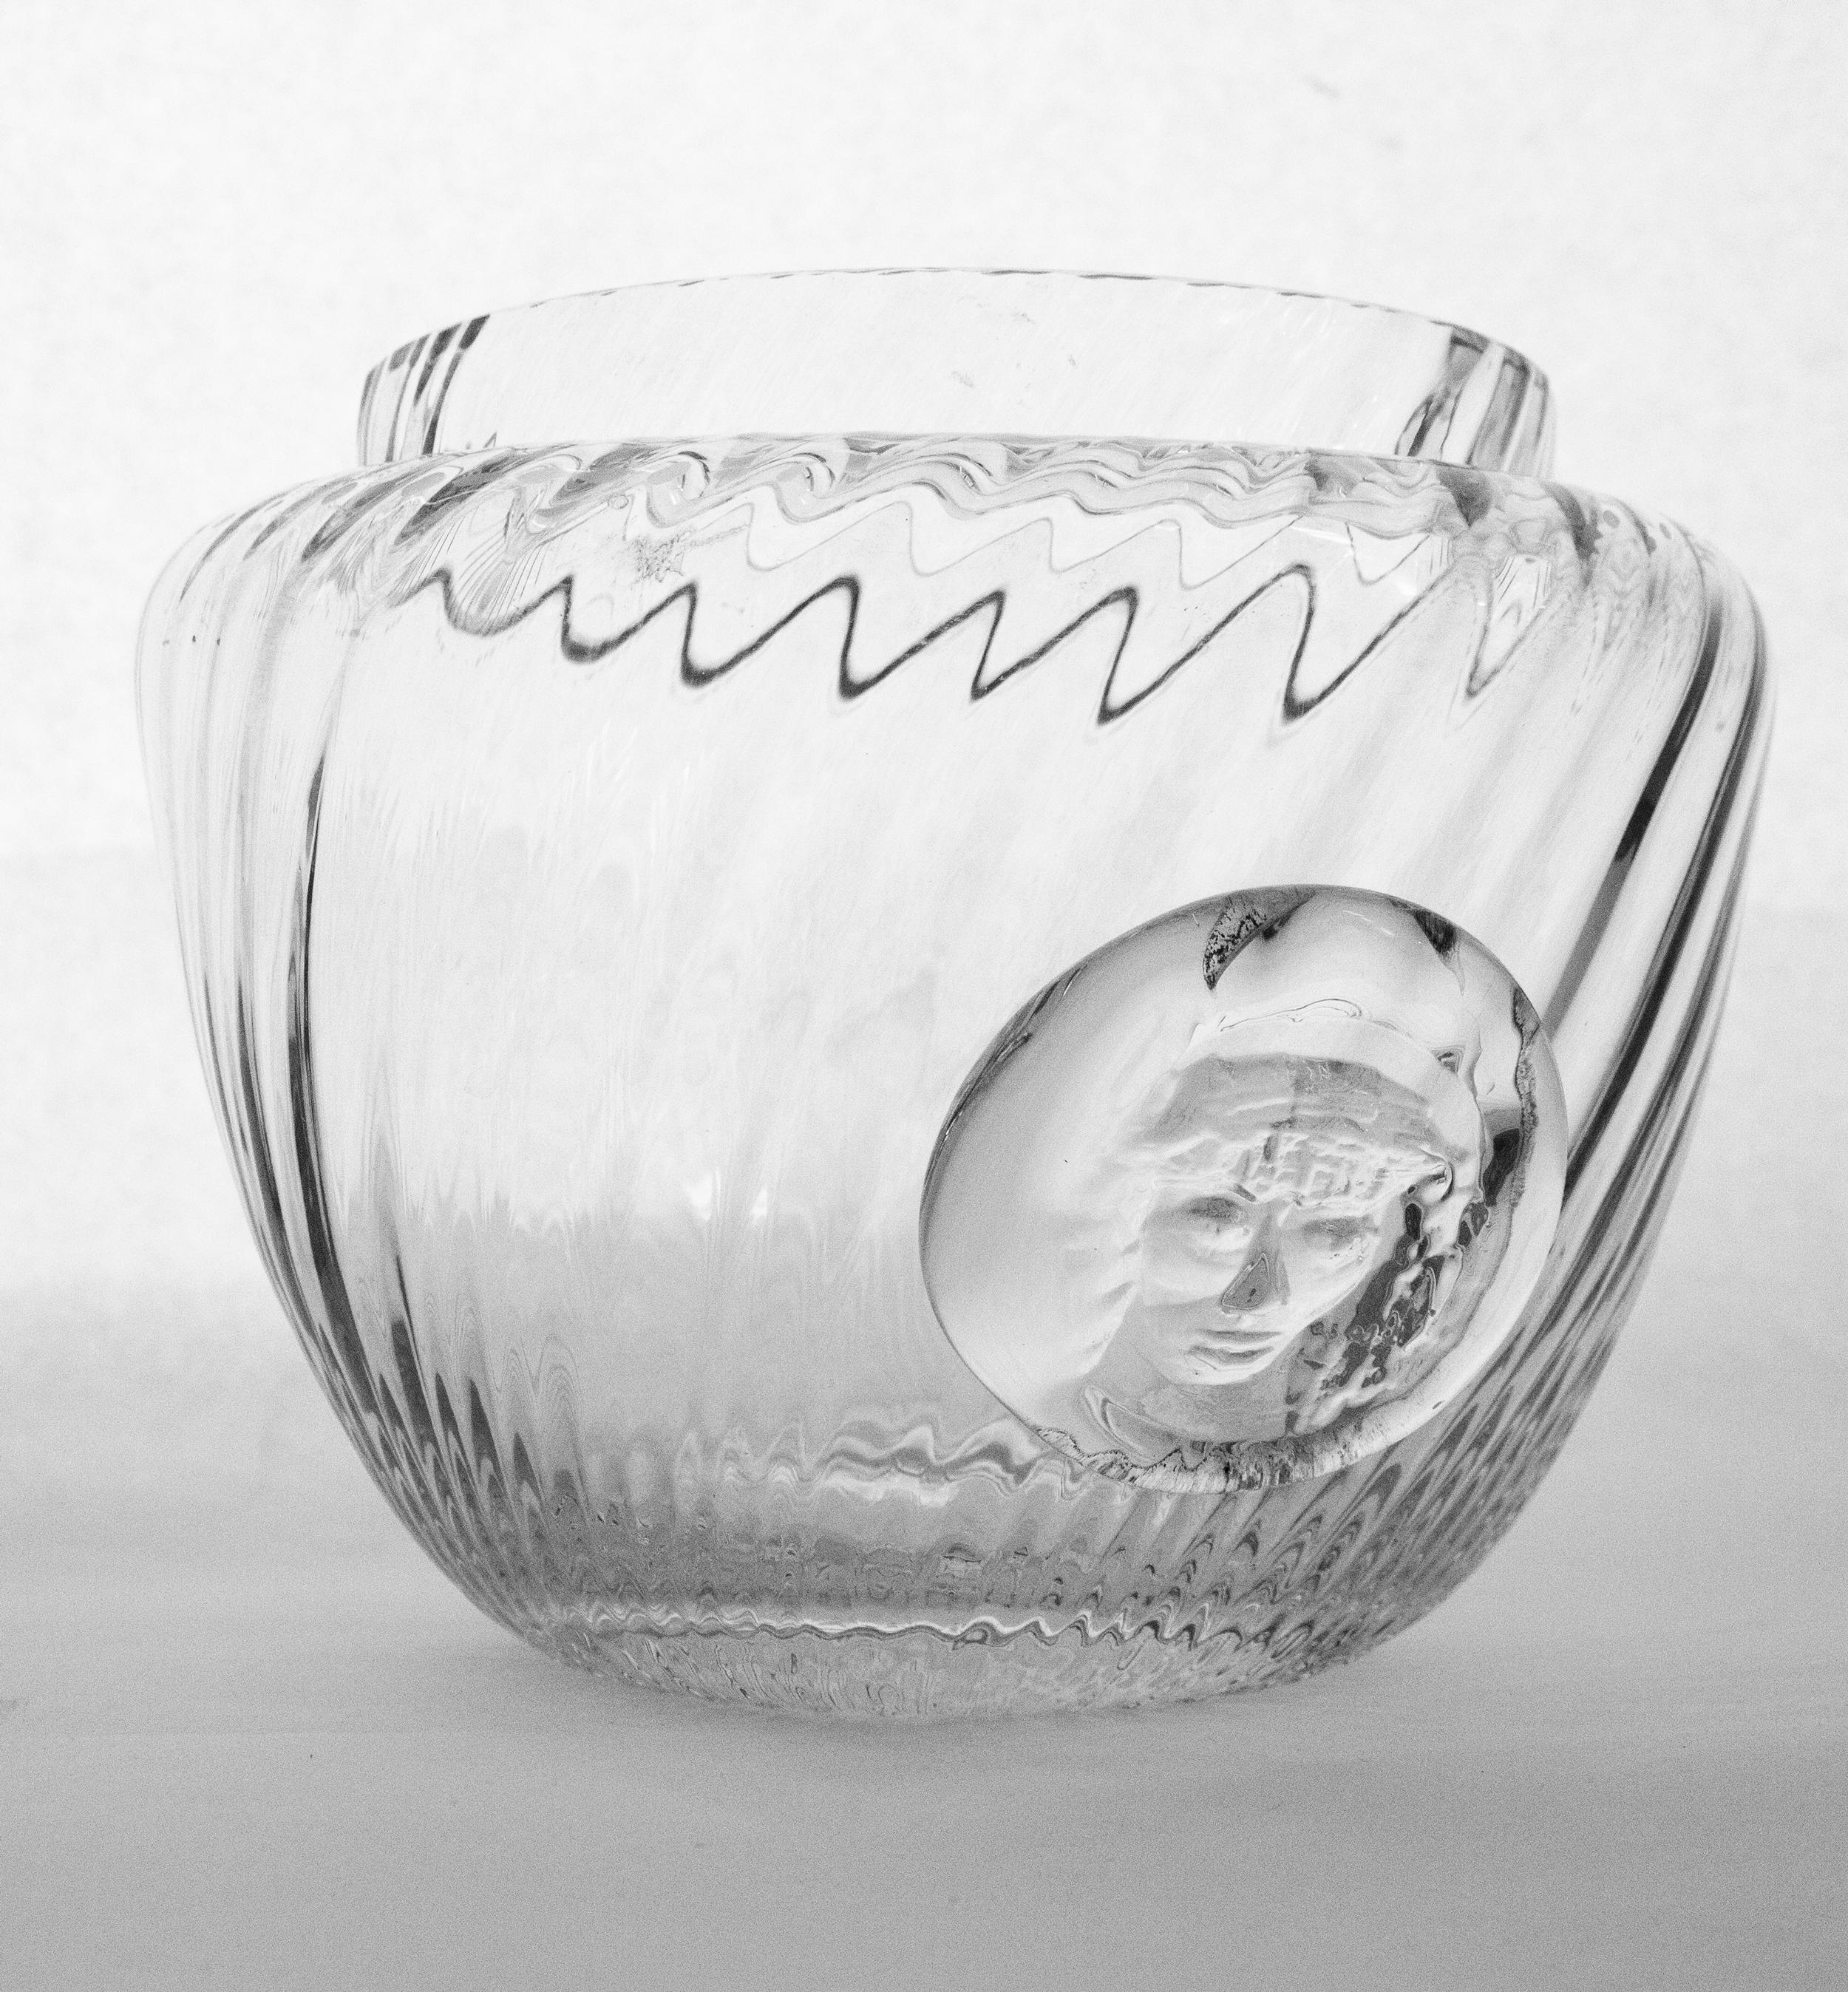 Grand bol en verre Turbine de l'artiste suédois Erik Höglund, 1980.
Erik Höglund, 1932-1998, était un sculpteur et artiste verrier suédois, communément connu pour son verre épais et bouillonnant fabriqué pour Boda. Ce grand bol est une pièce